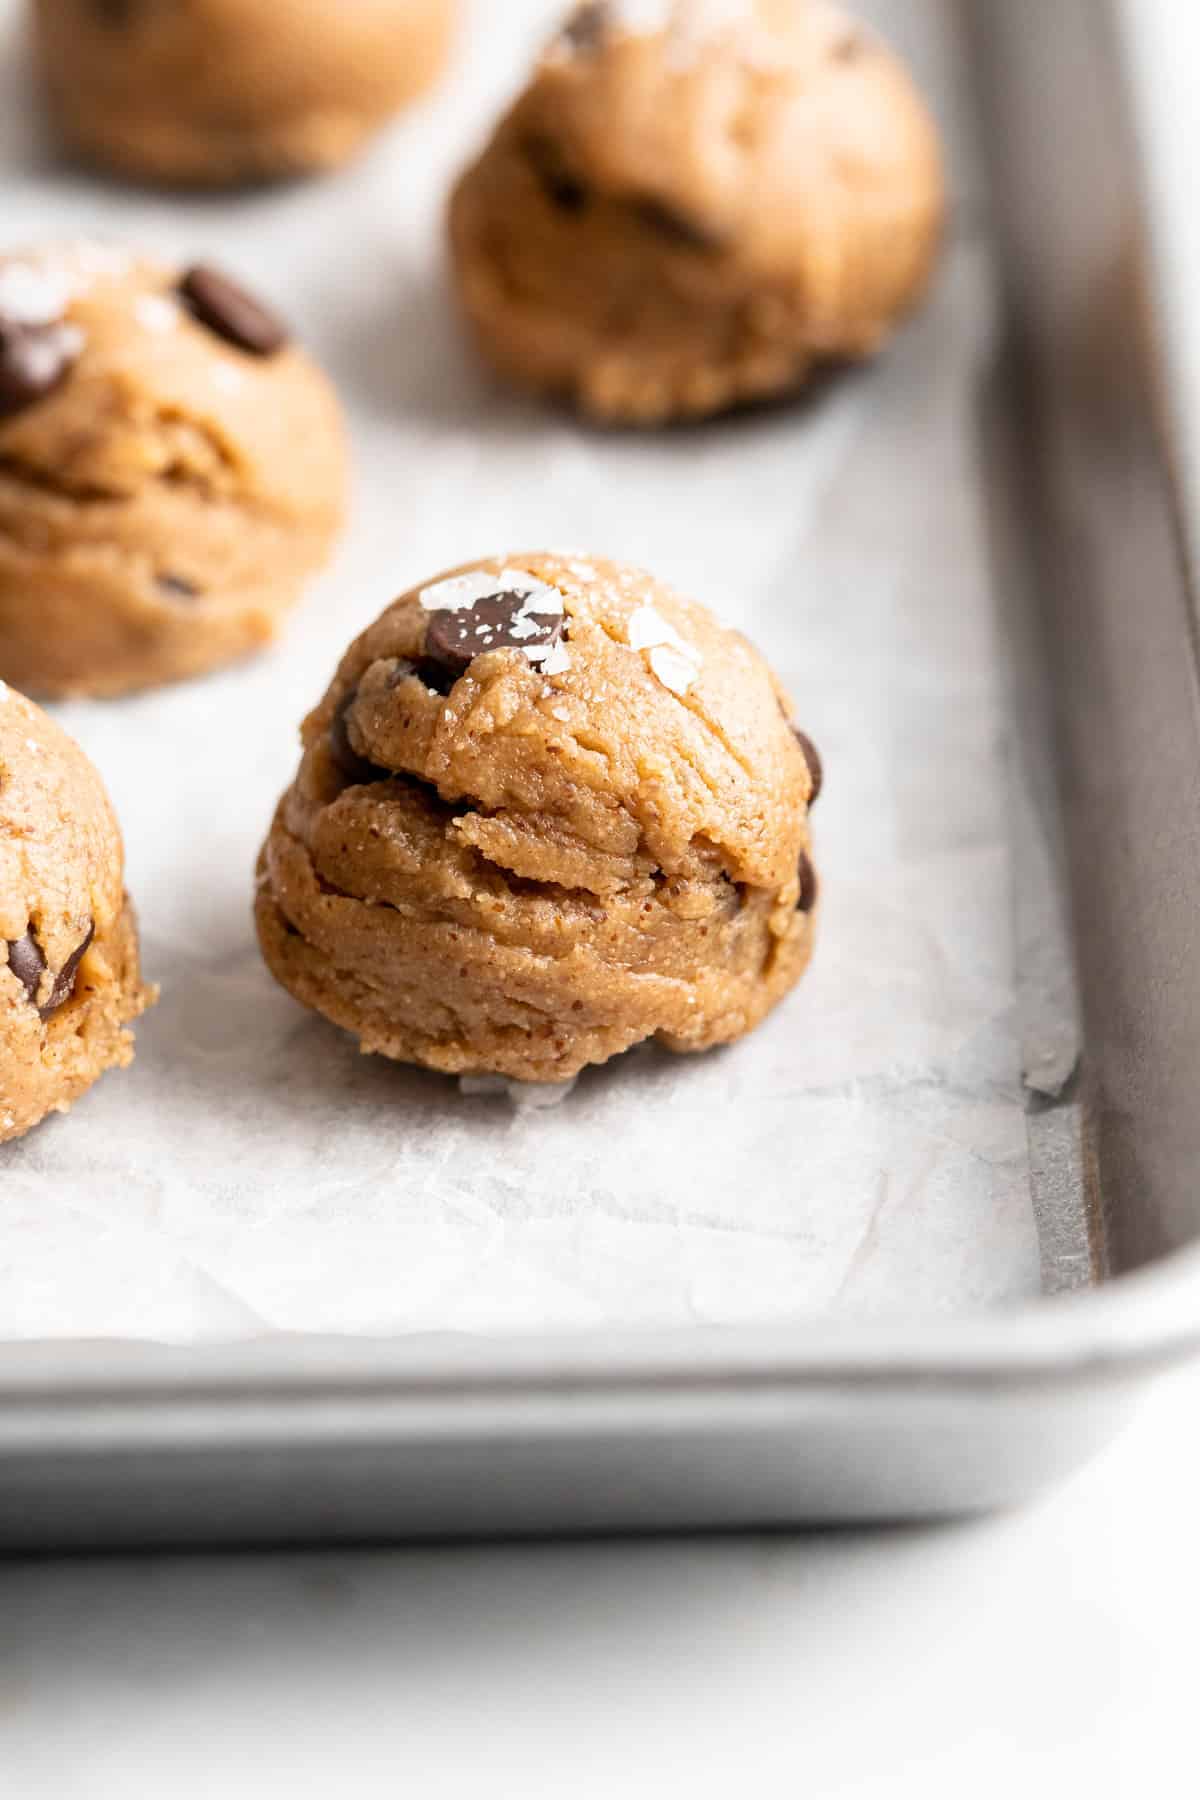 Closeup of vegan edible chocolate chip cookie dough